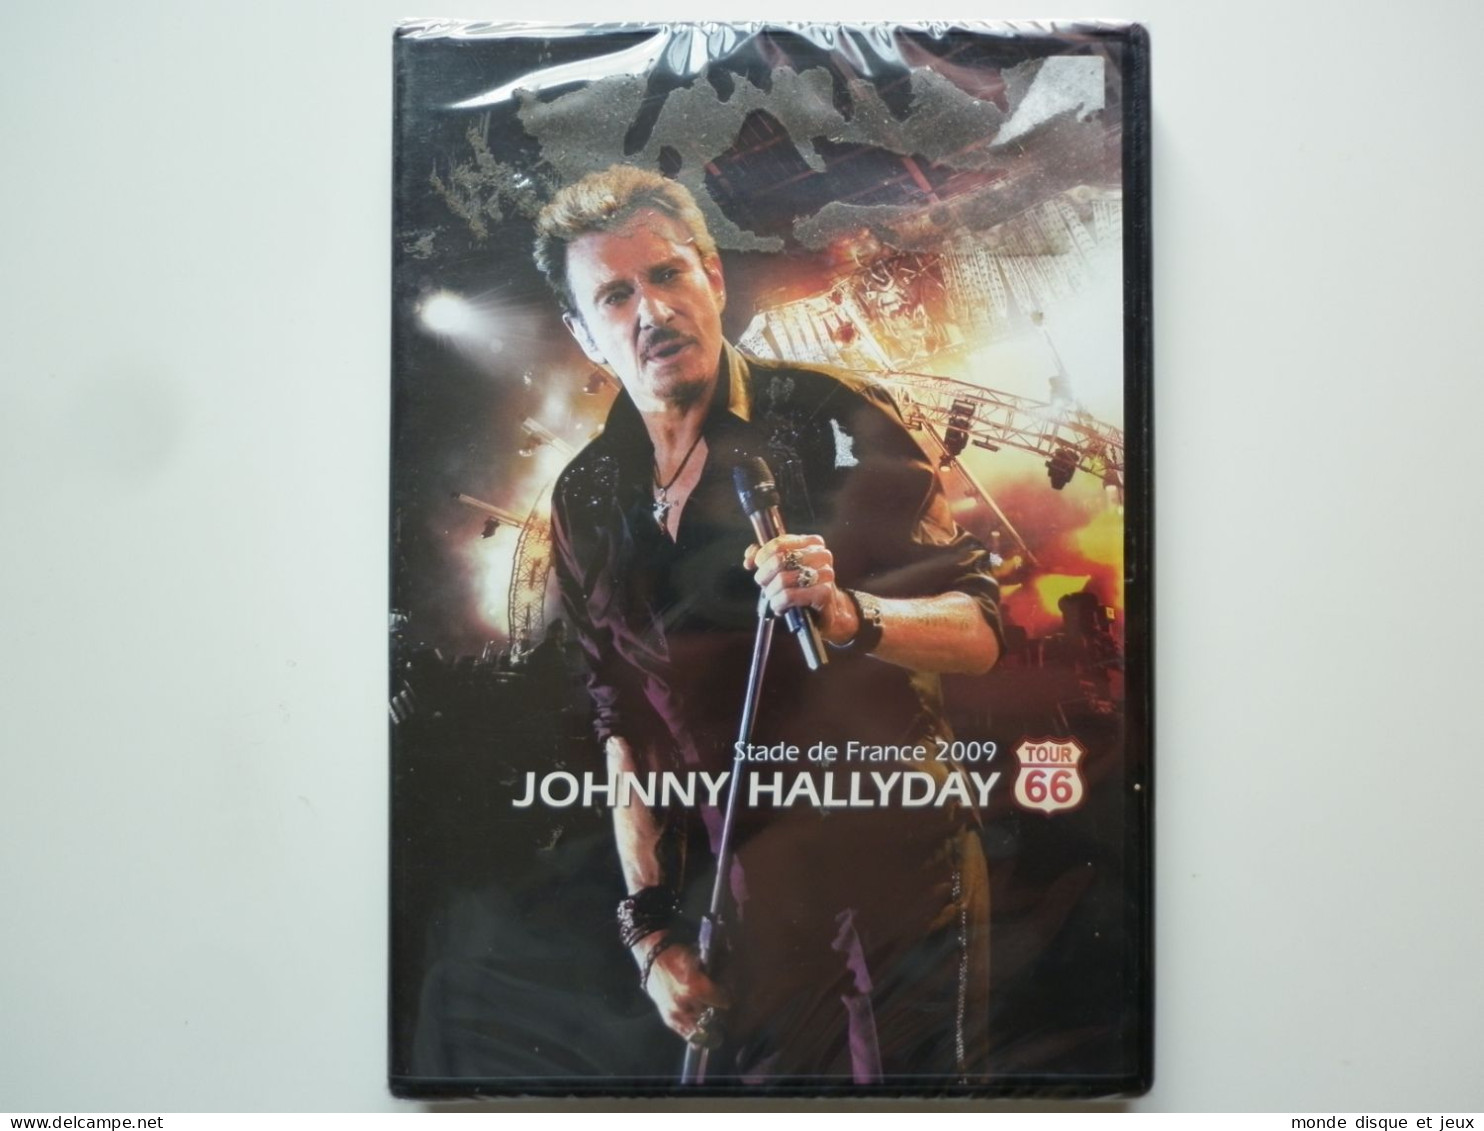 Johnny Hallyday Dvd Stade De France 2009 Tour 66 - Muziek DVD's